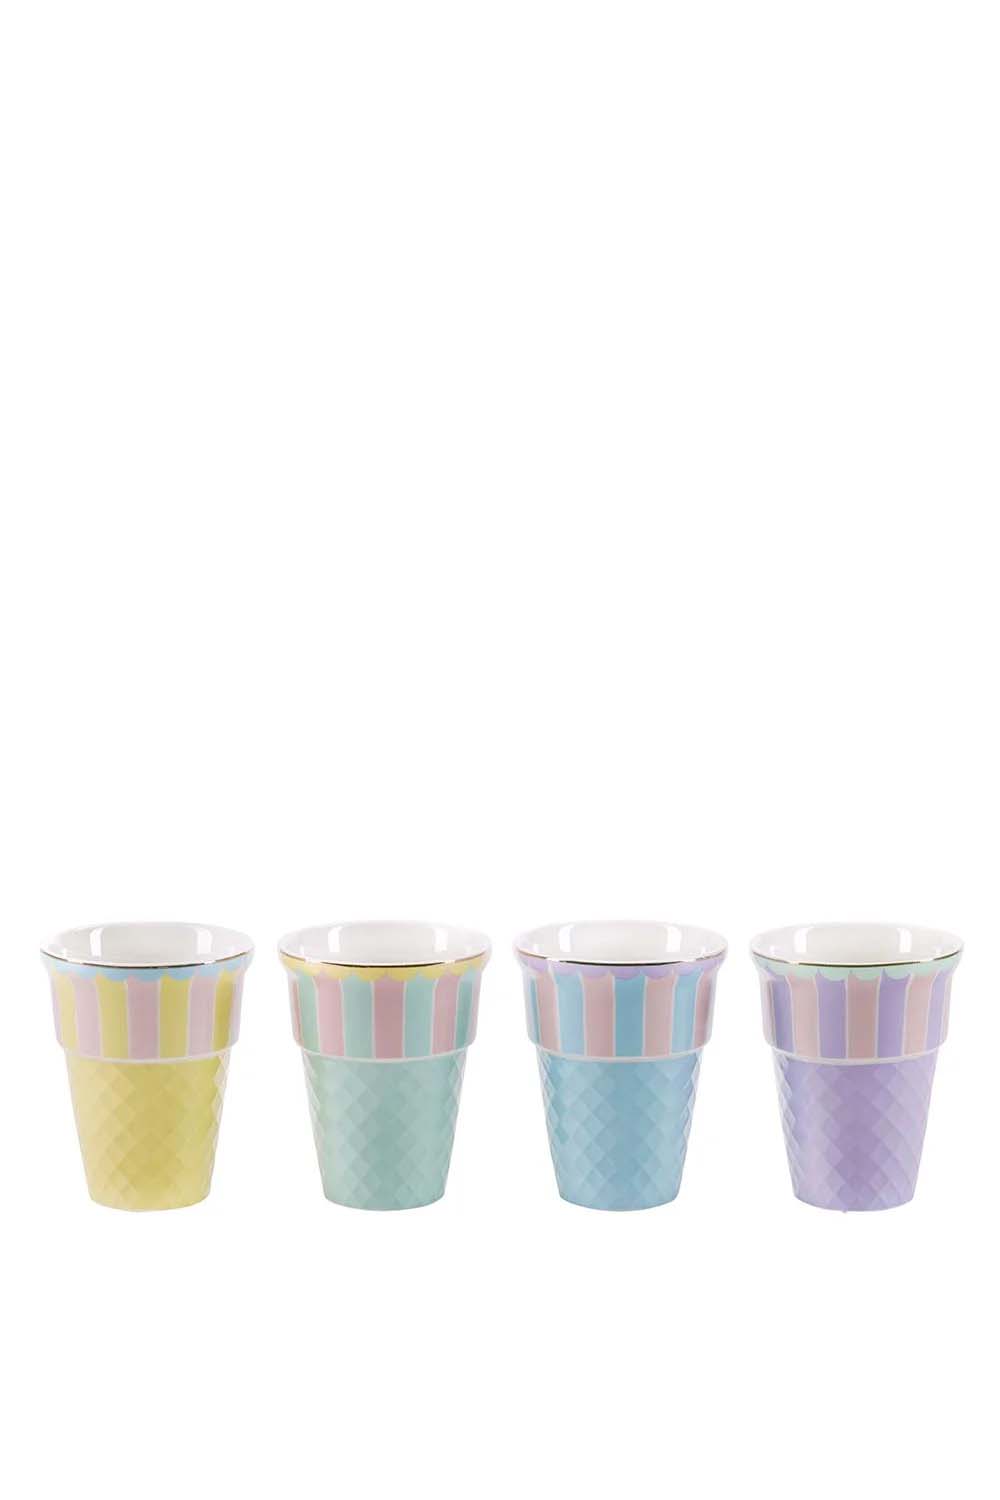 Pastelaria Ice cream cups, Set of 4